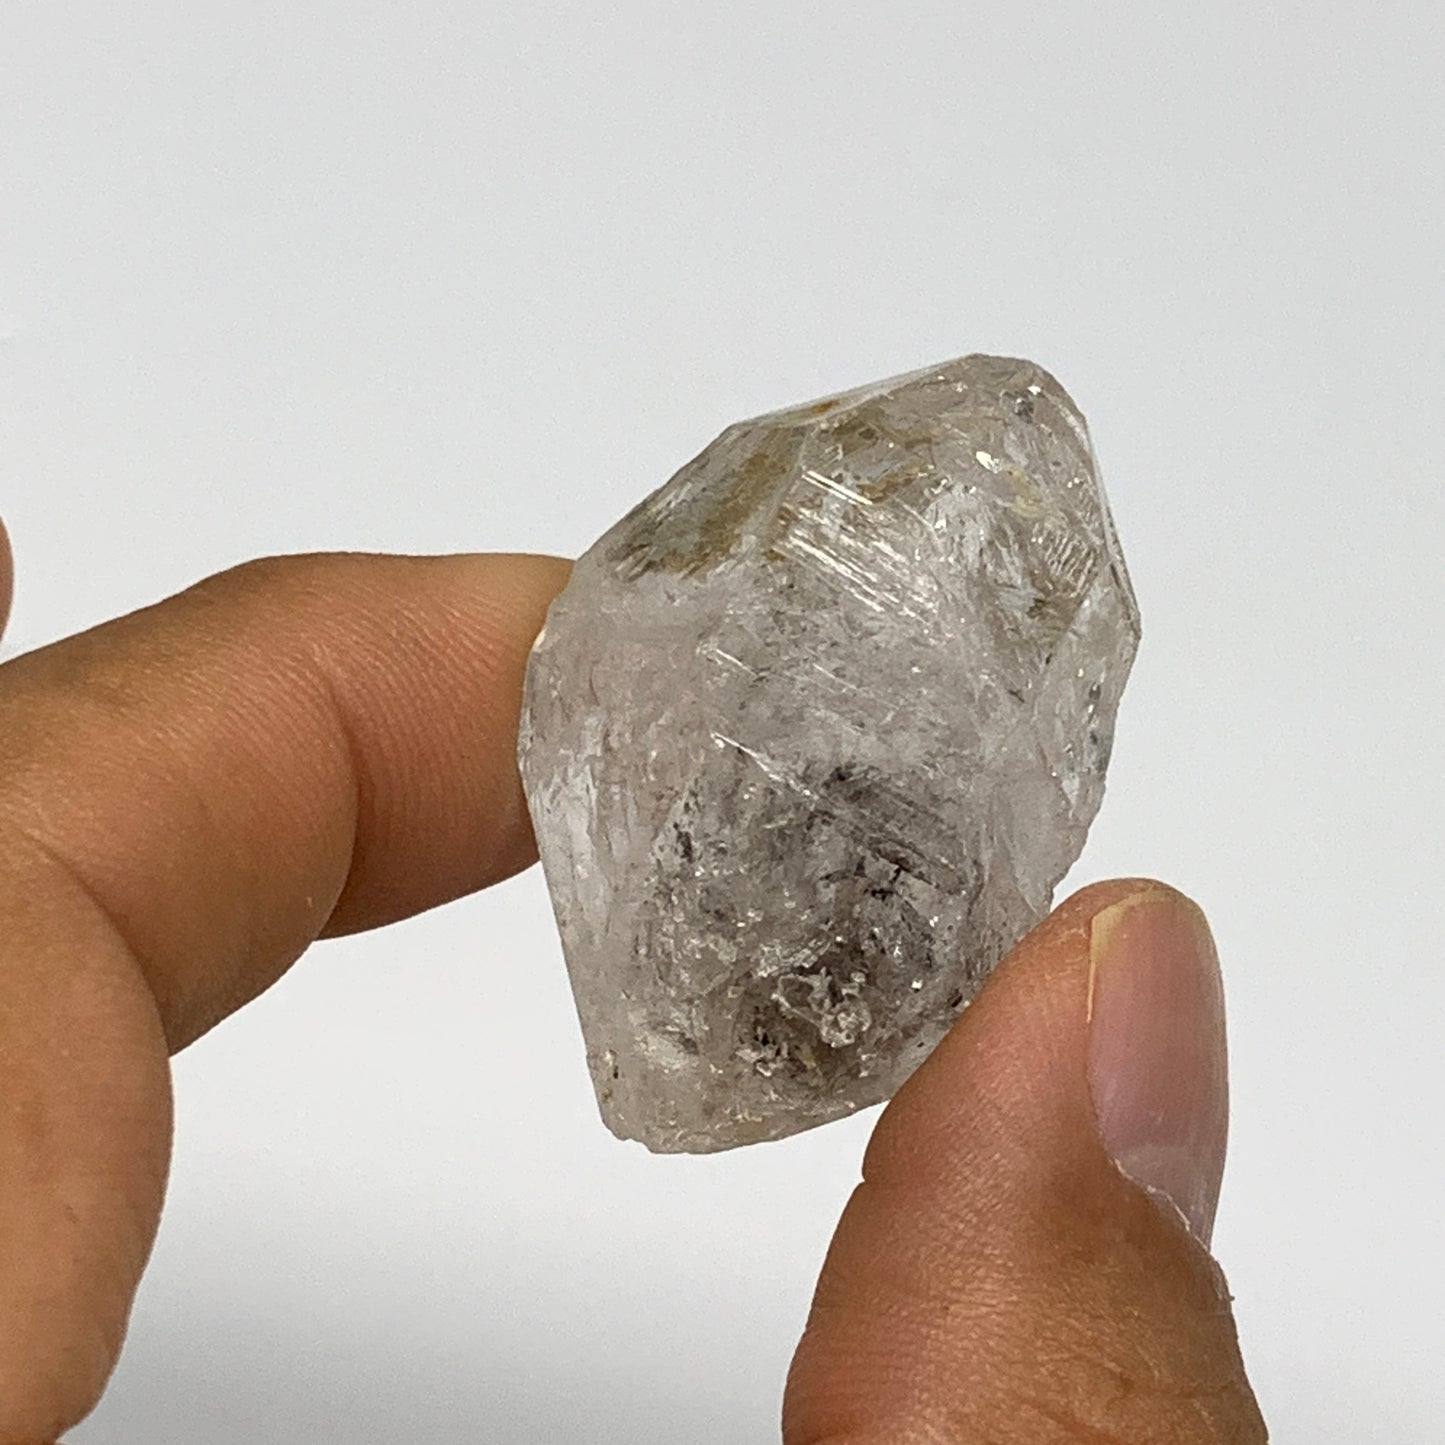 18.7g, 1.4"x0.9"x0.7", Natural Window Quartz Crystal Terminated @Pakistan,B27527